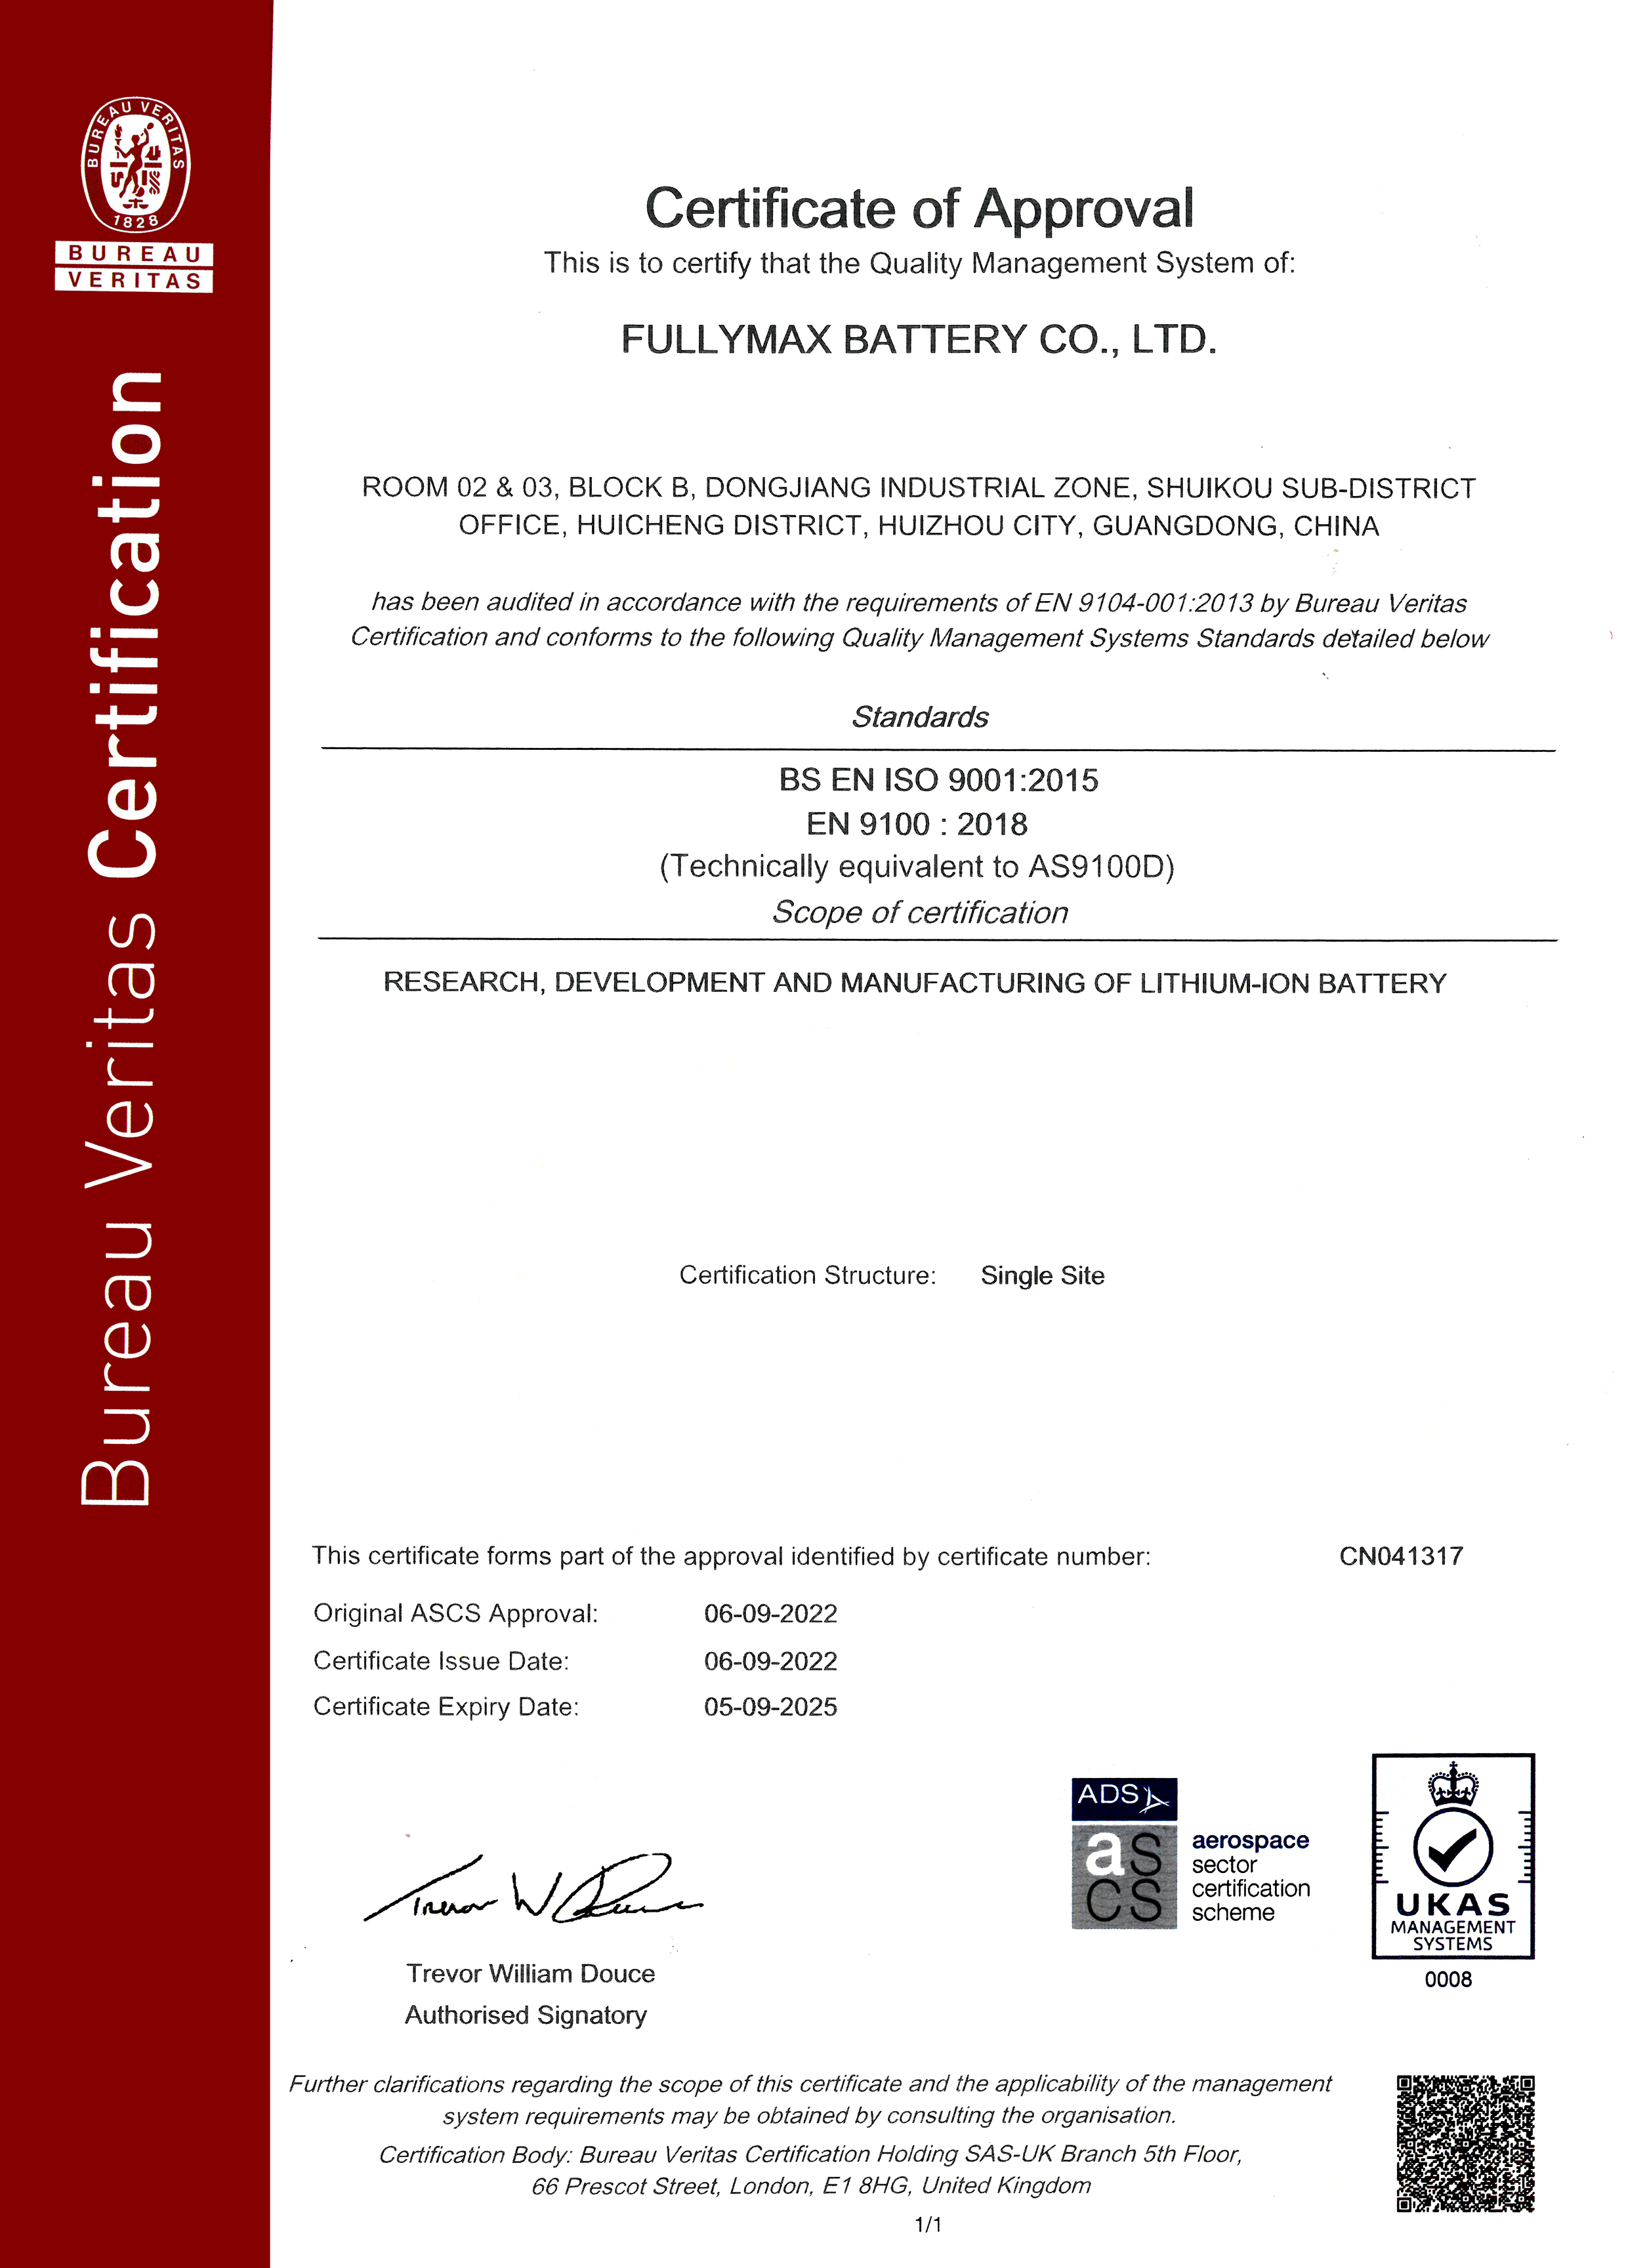 【喜报】热烈祝贺918博天堂电池顺利获取了AS9100D:2016航空质量管理体系证书